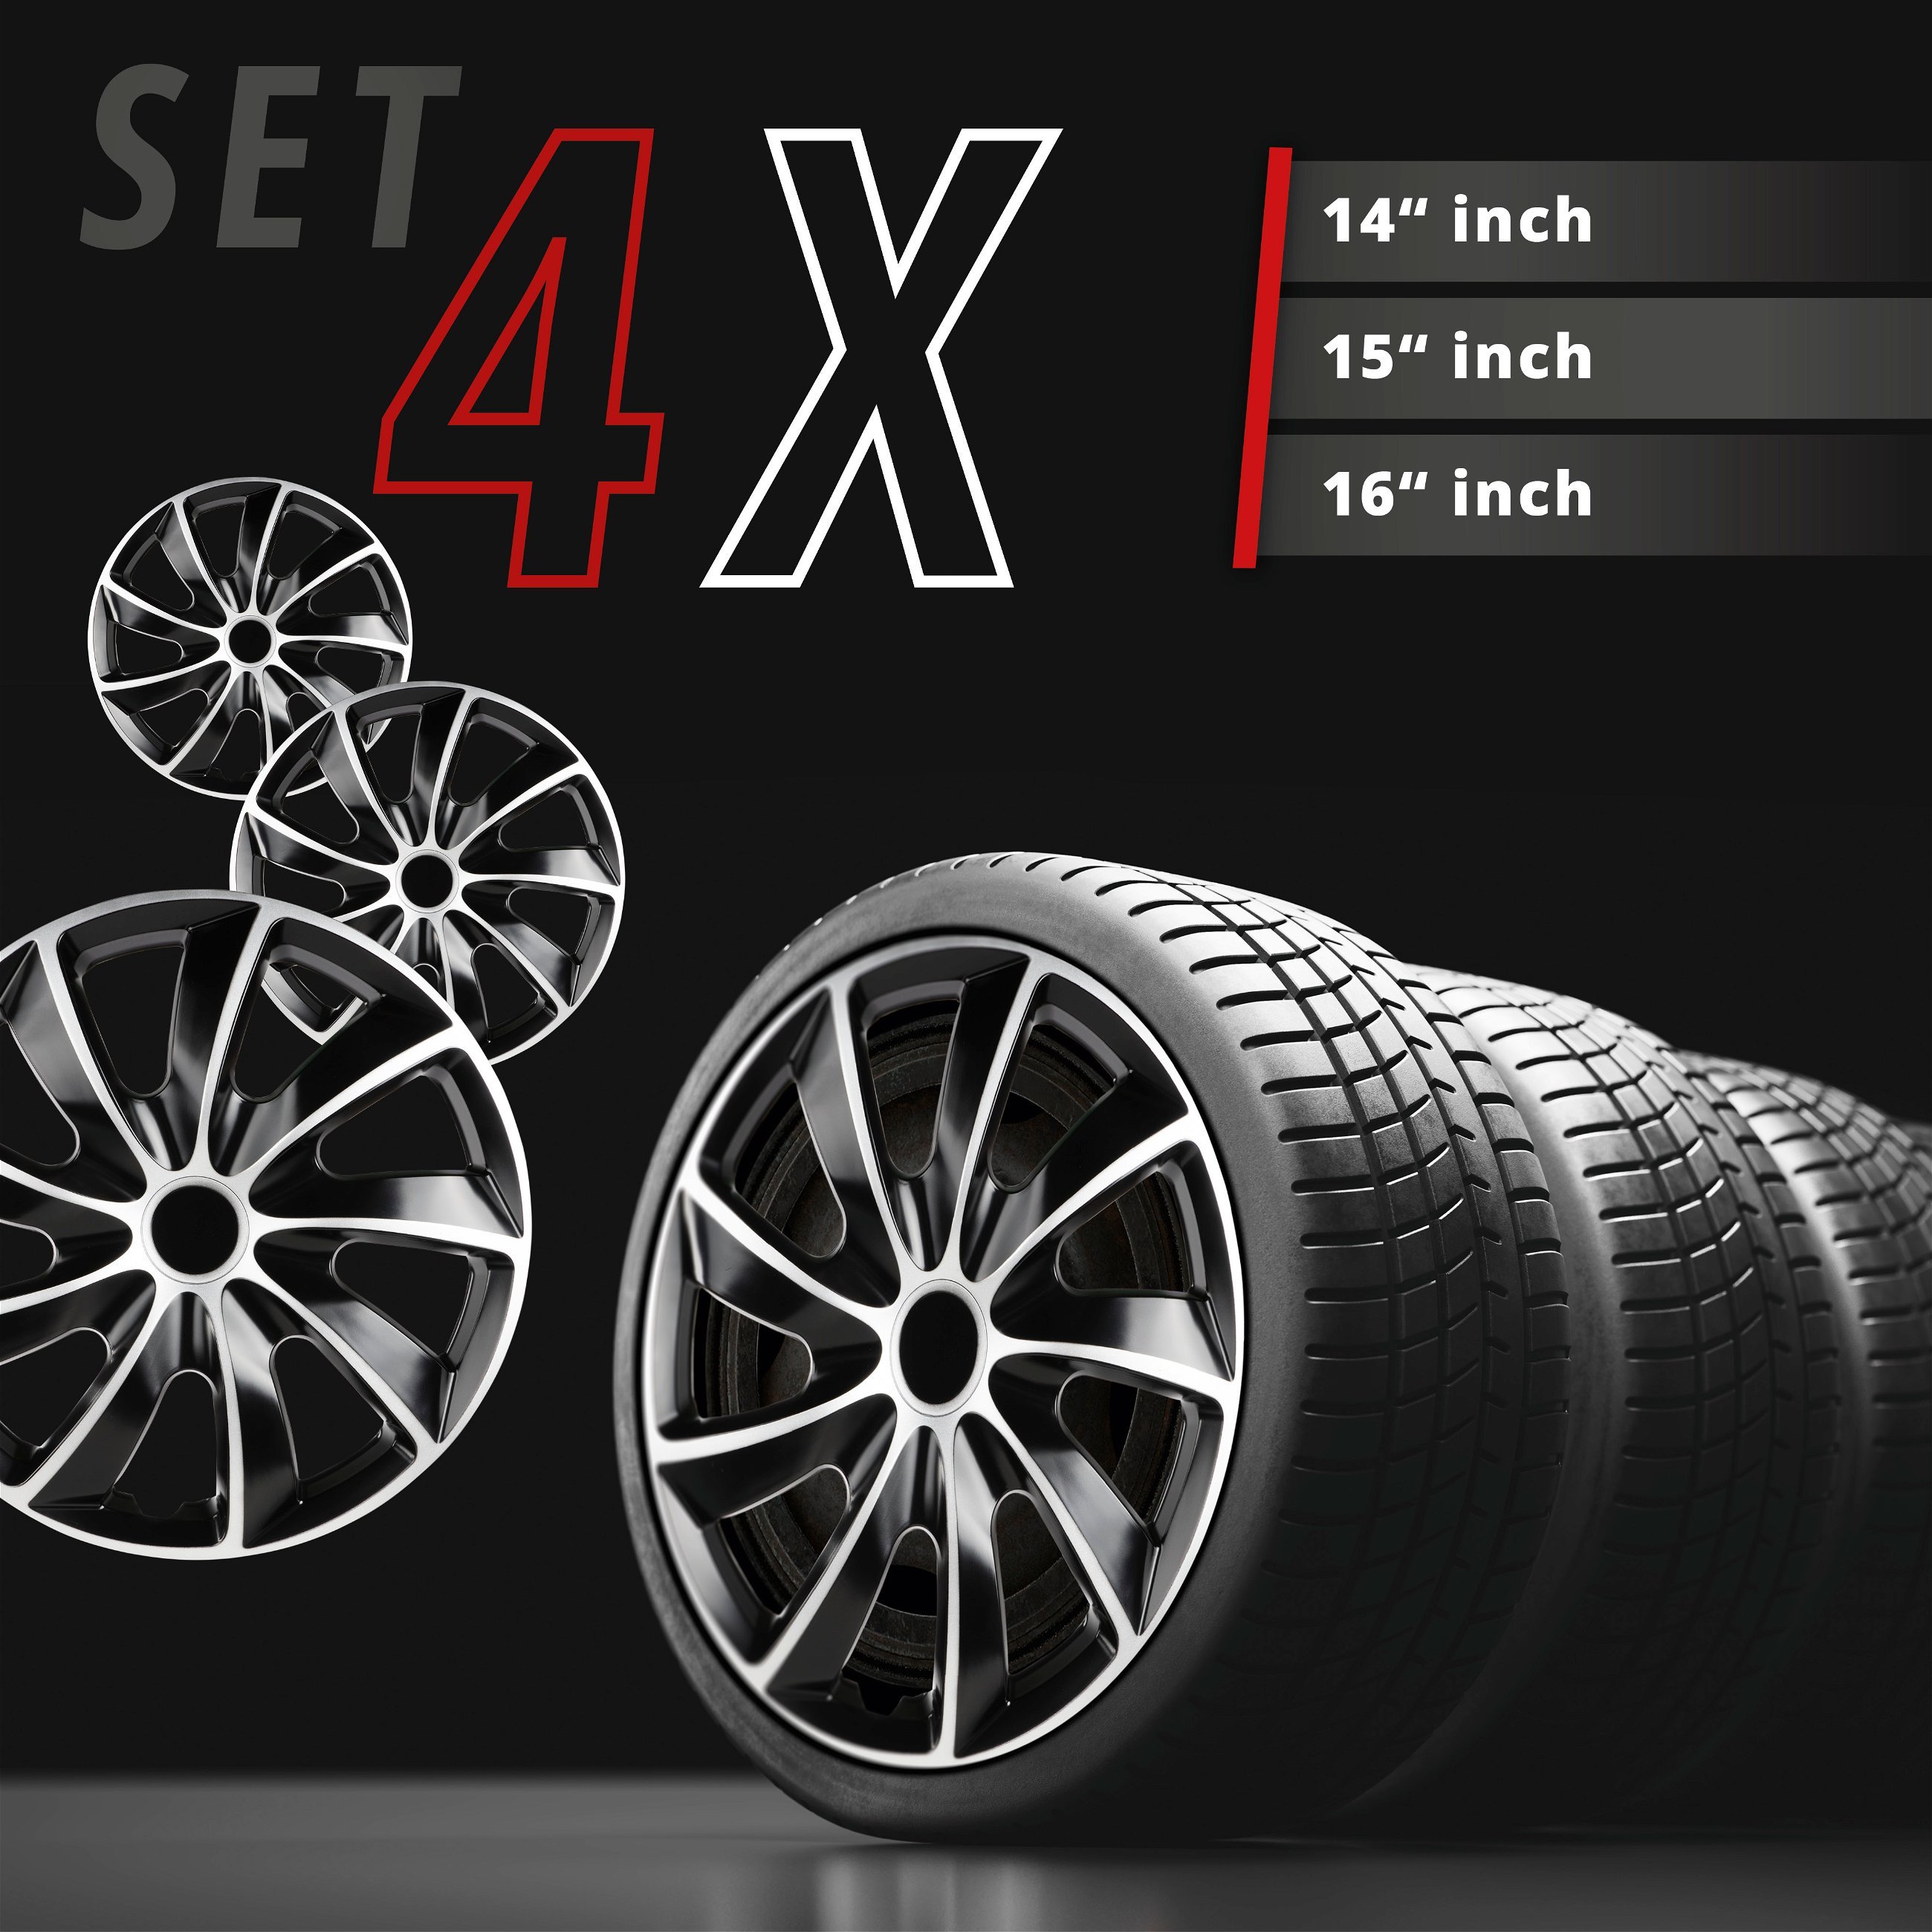 Wheel covers Aero Bicolor 15", 4 piece black/silver